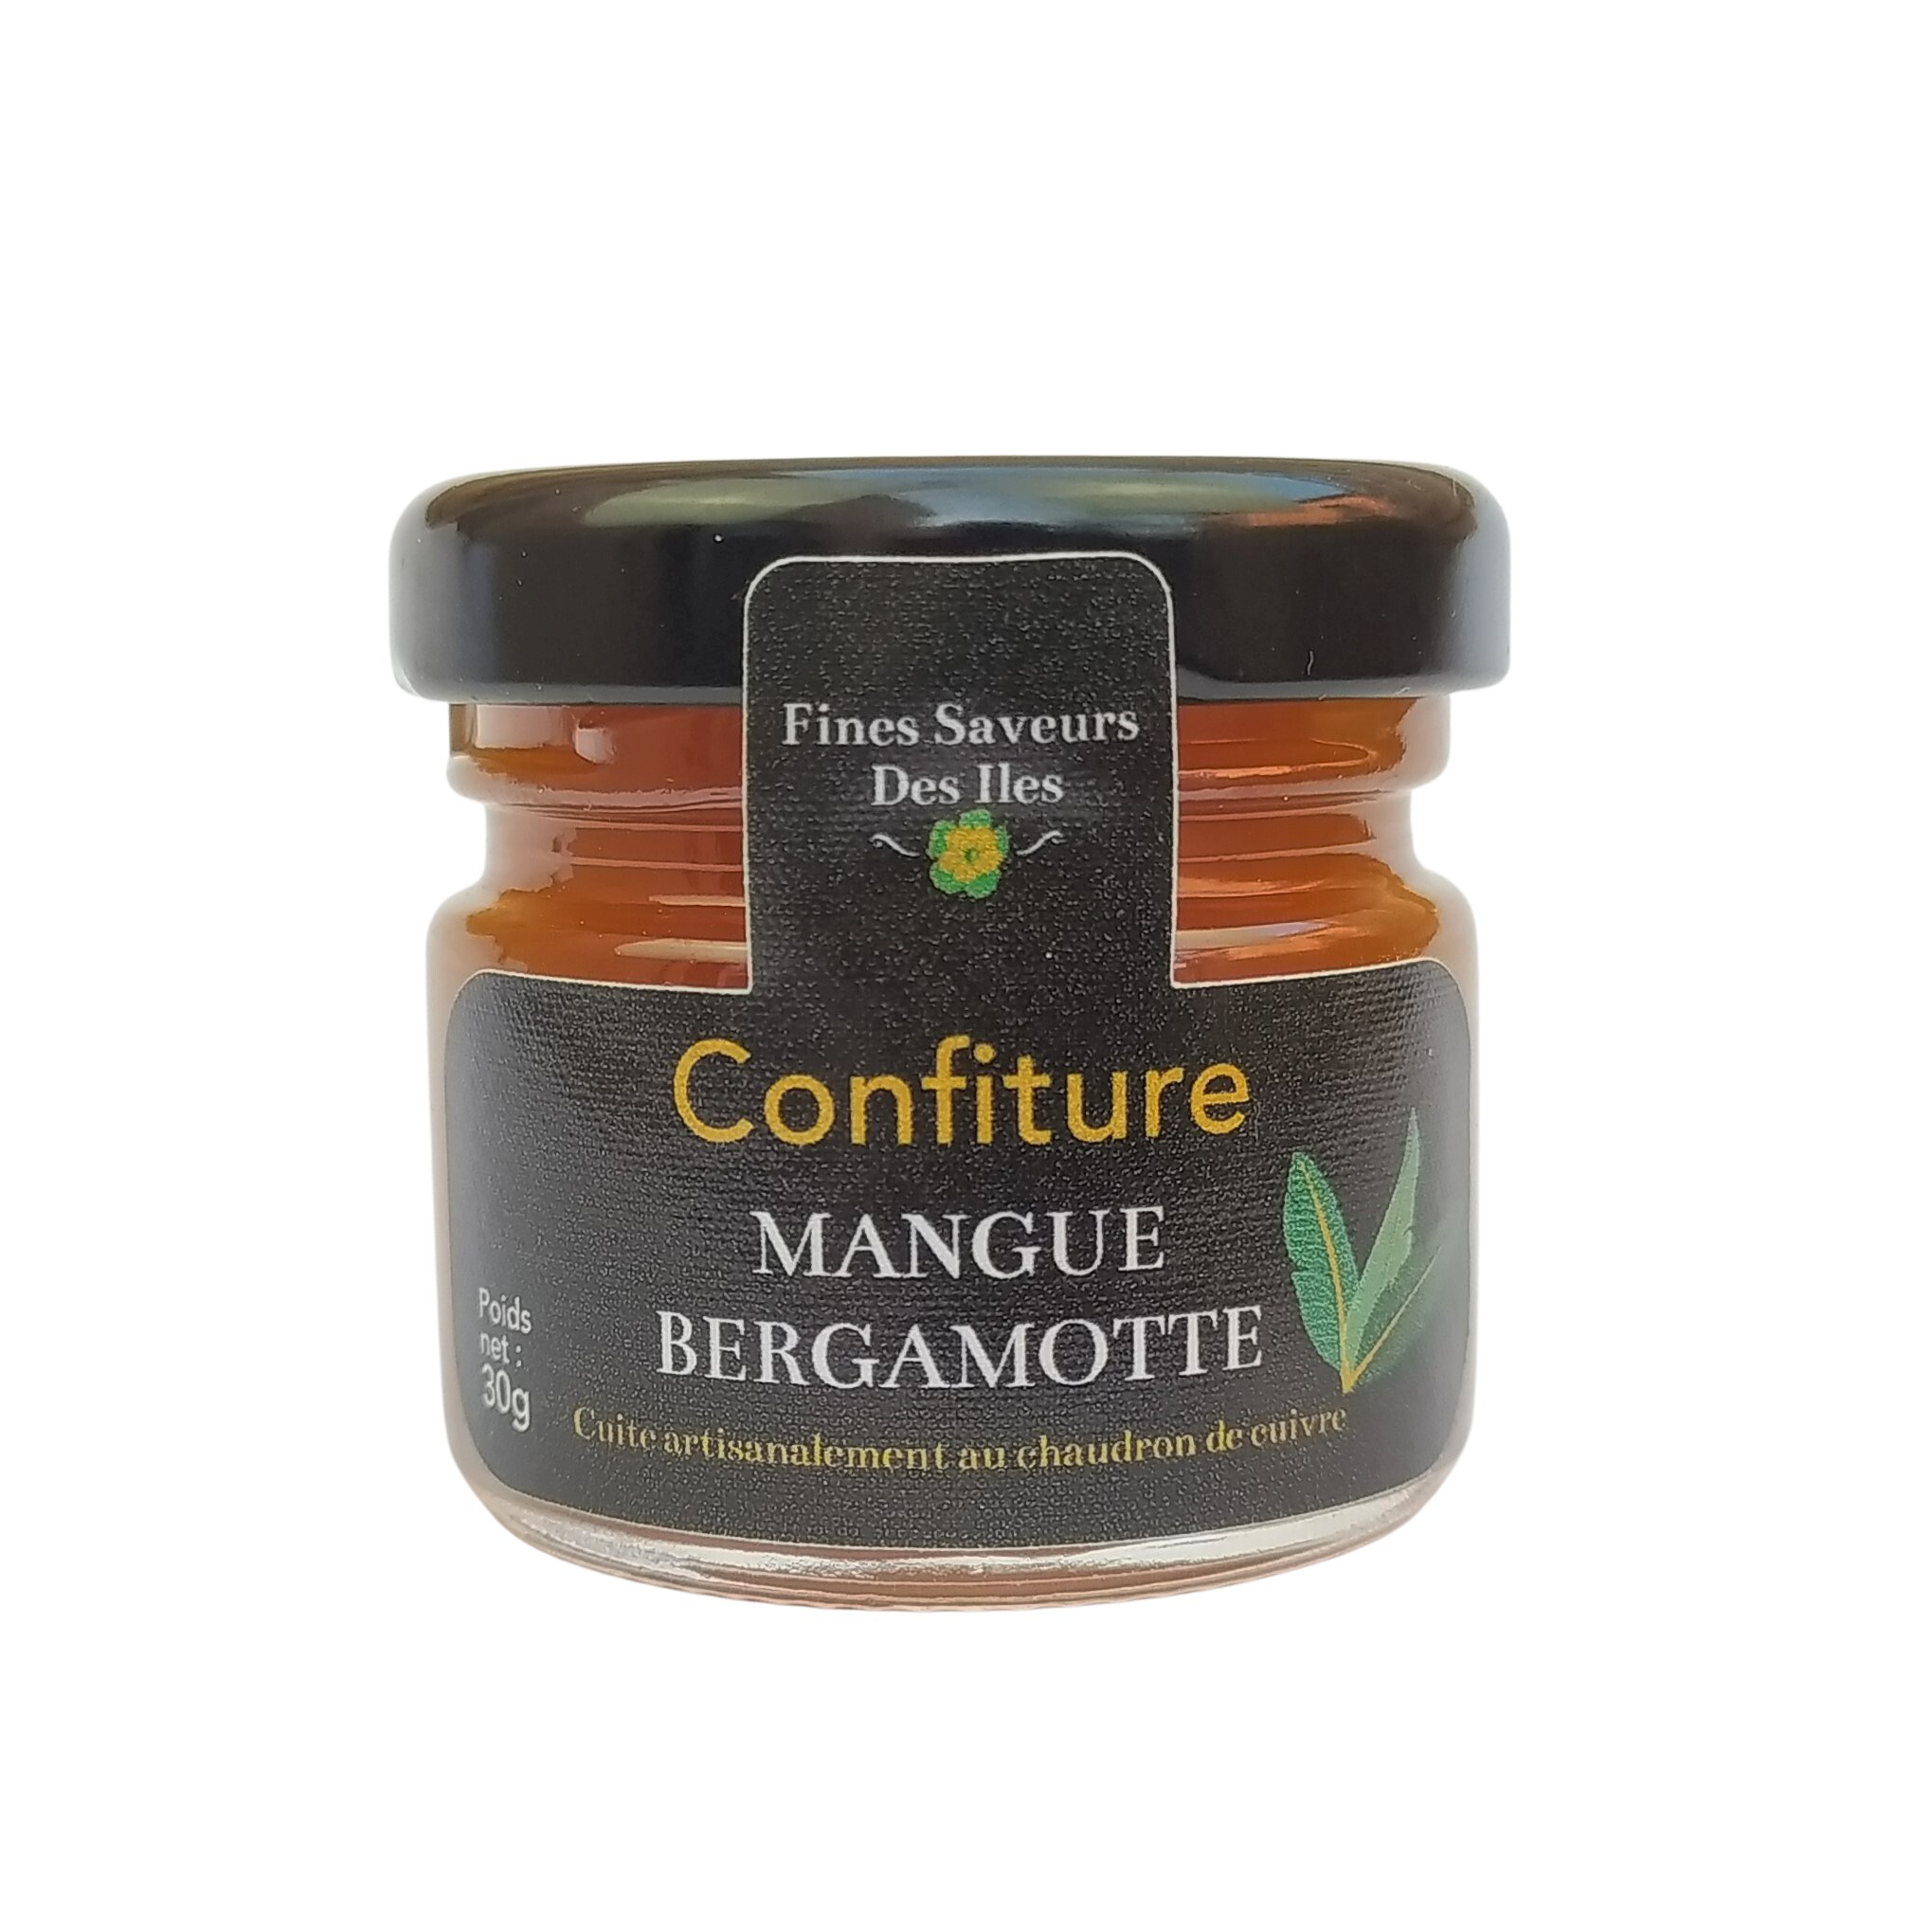 confiture mangue bergamote 30g de fines saveurs des iles